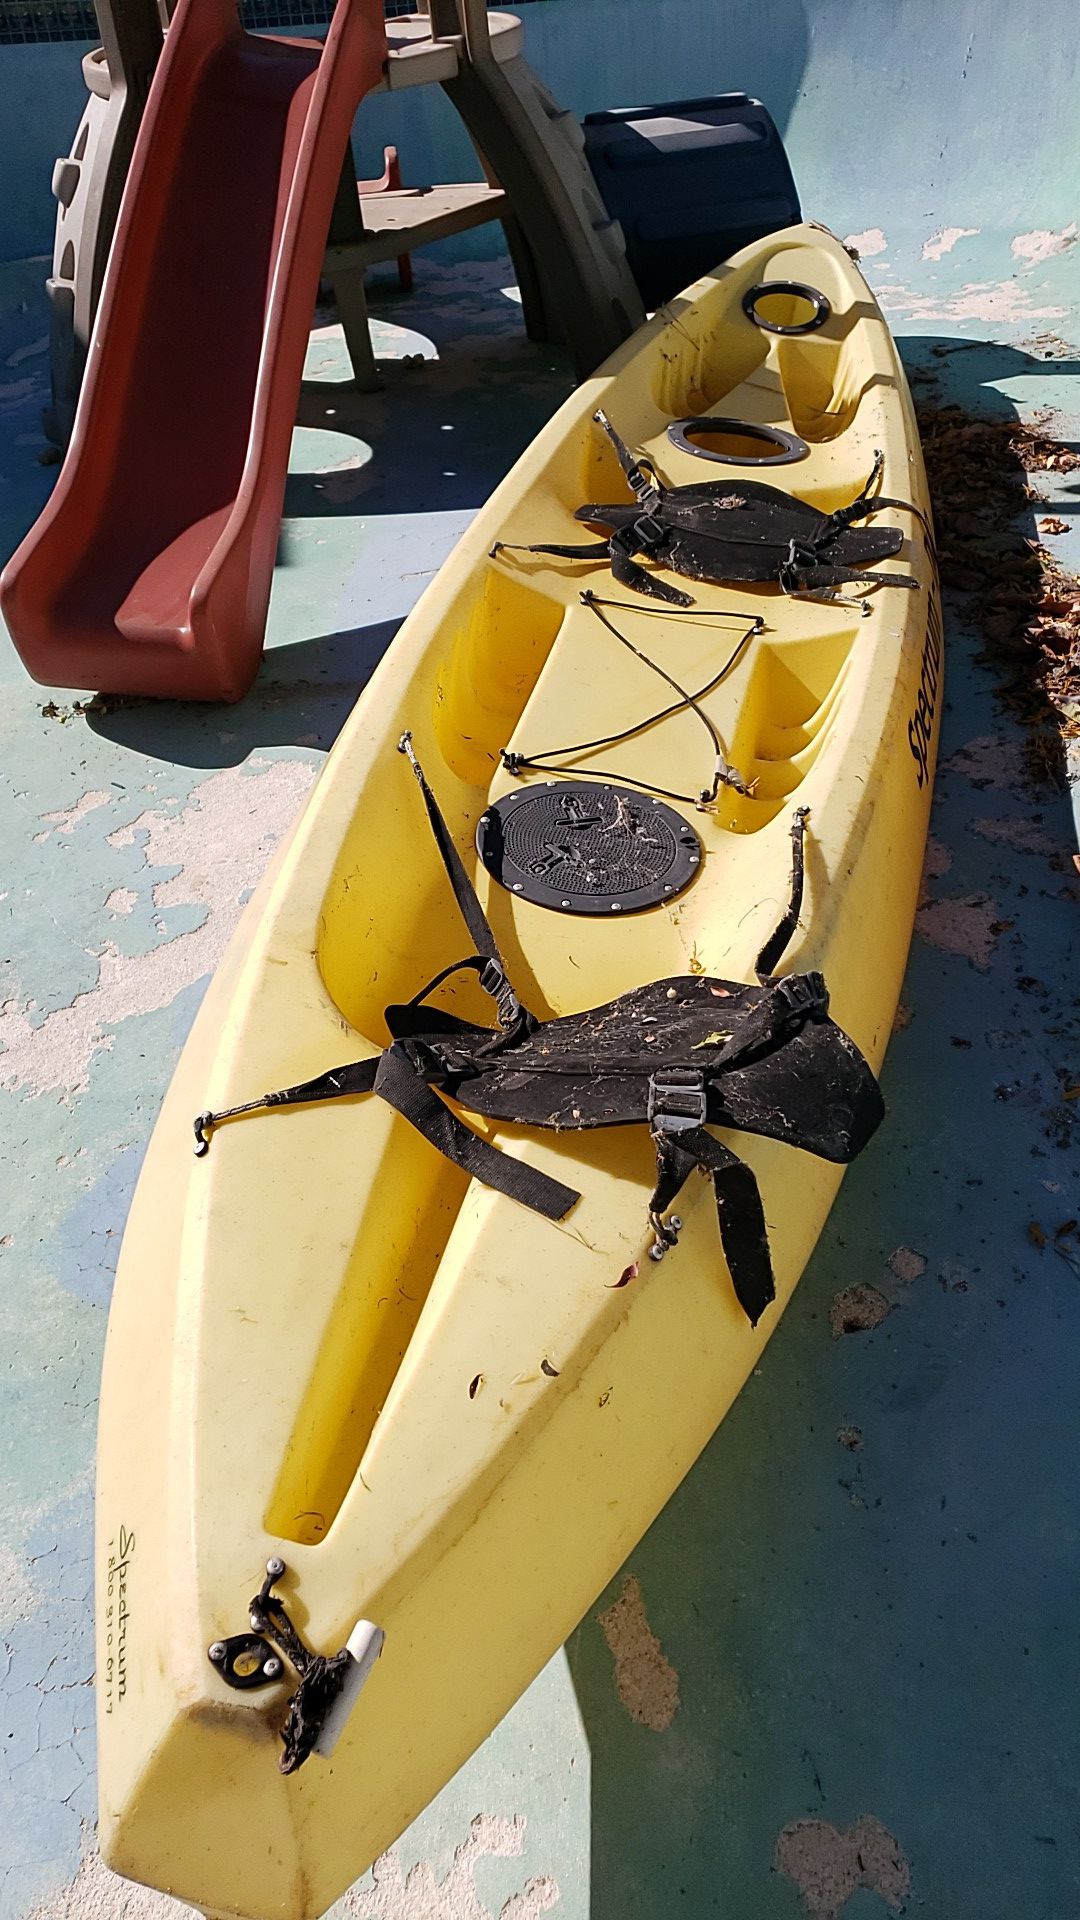 Spectrum duo tandem kayak needs repair